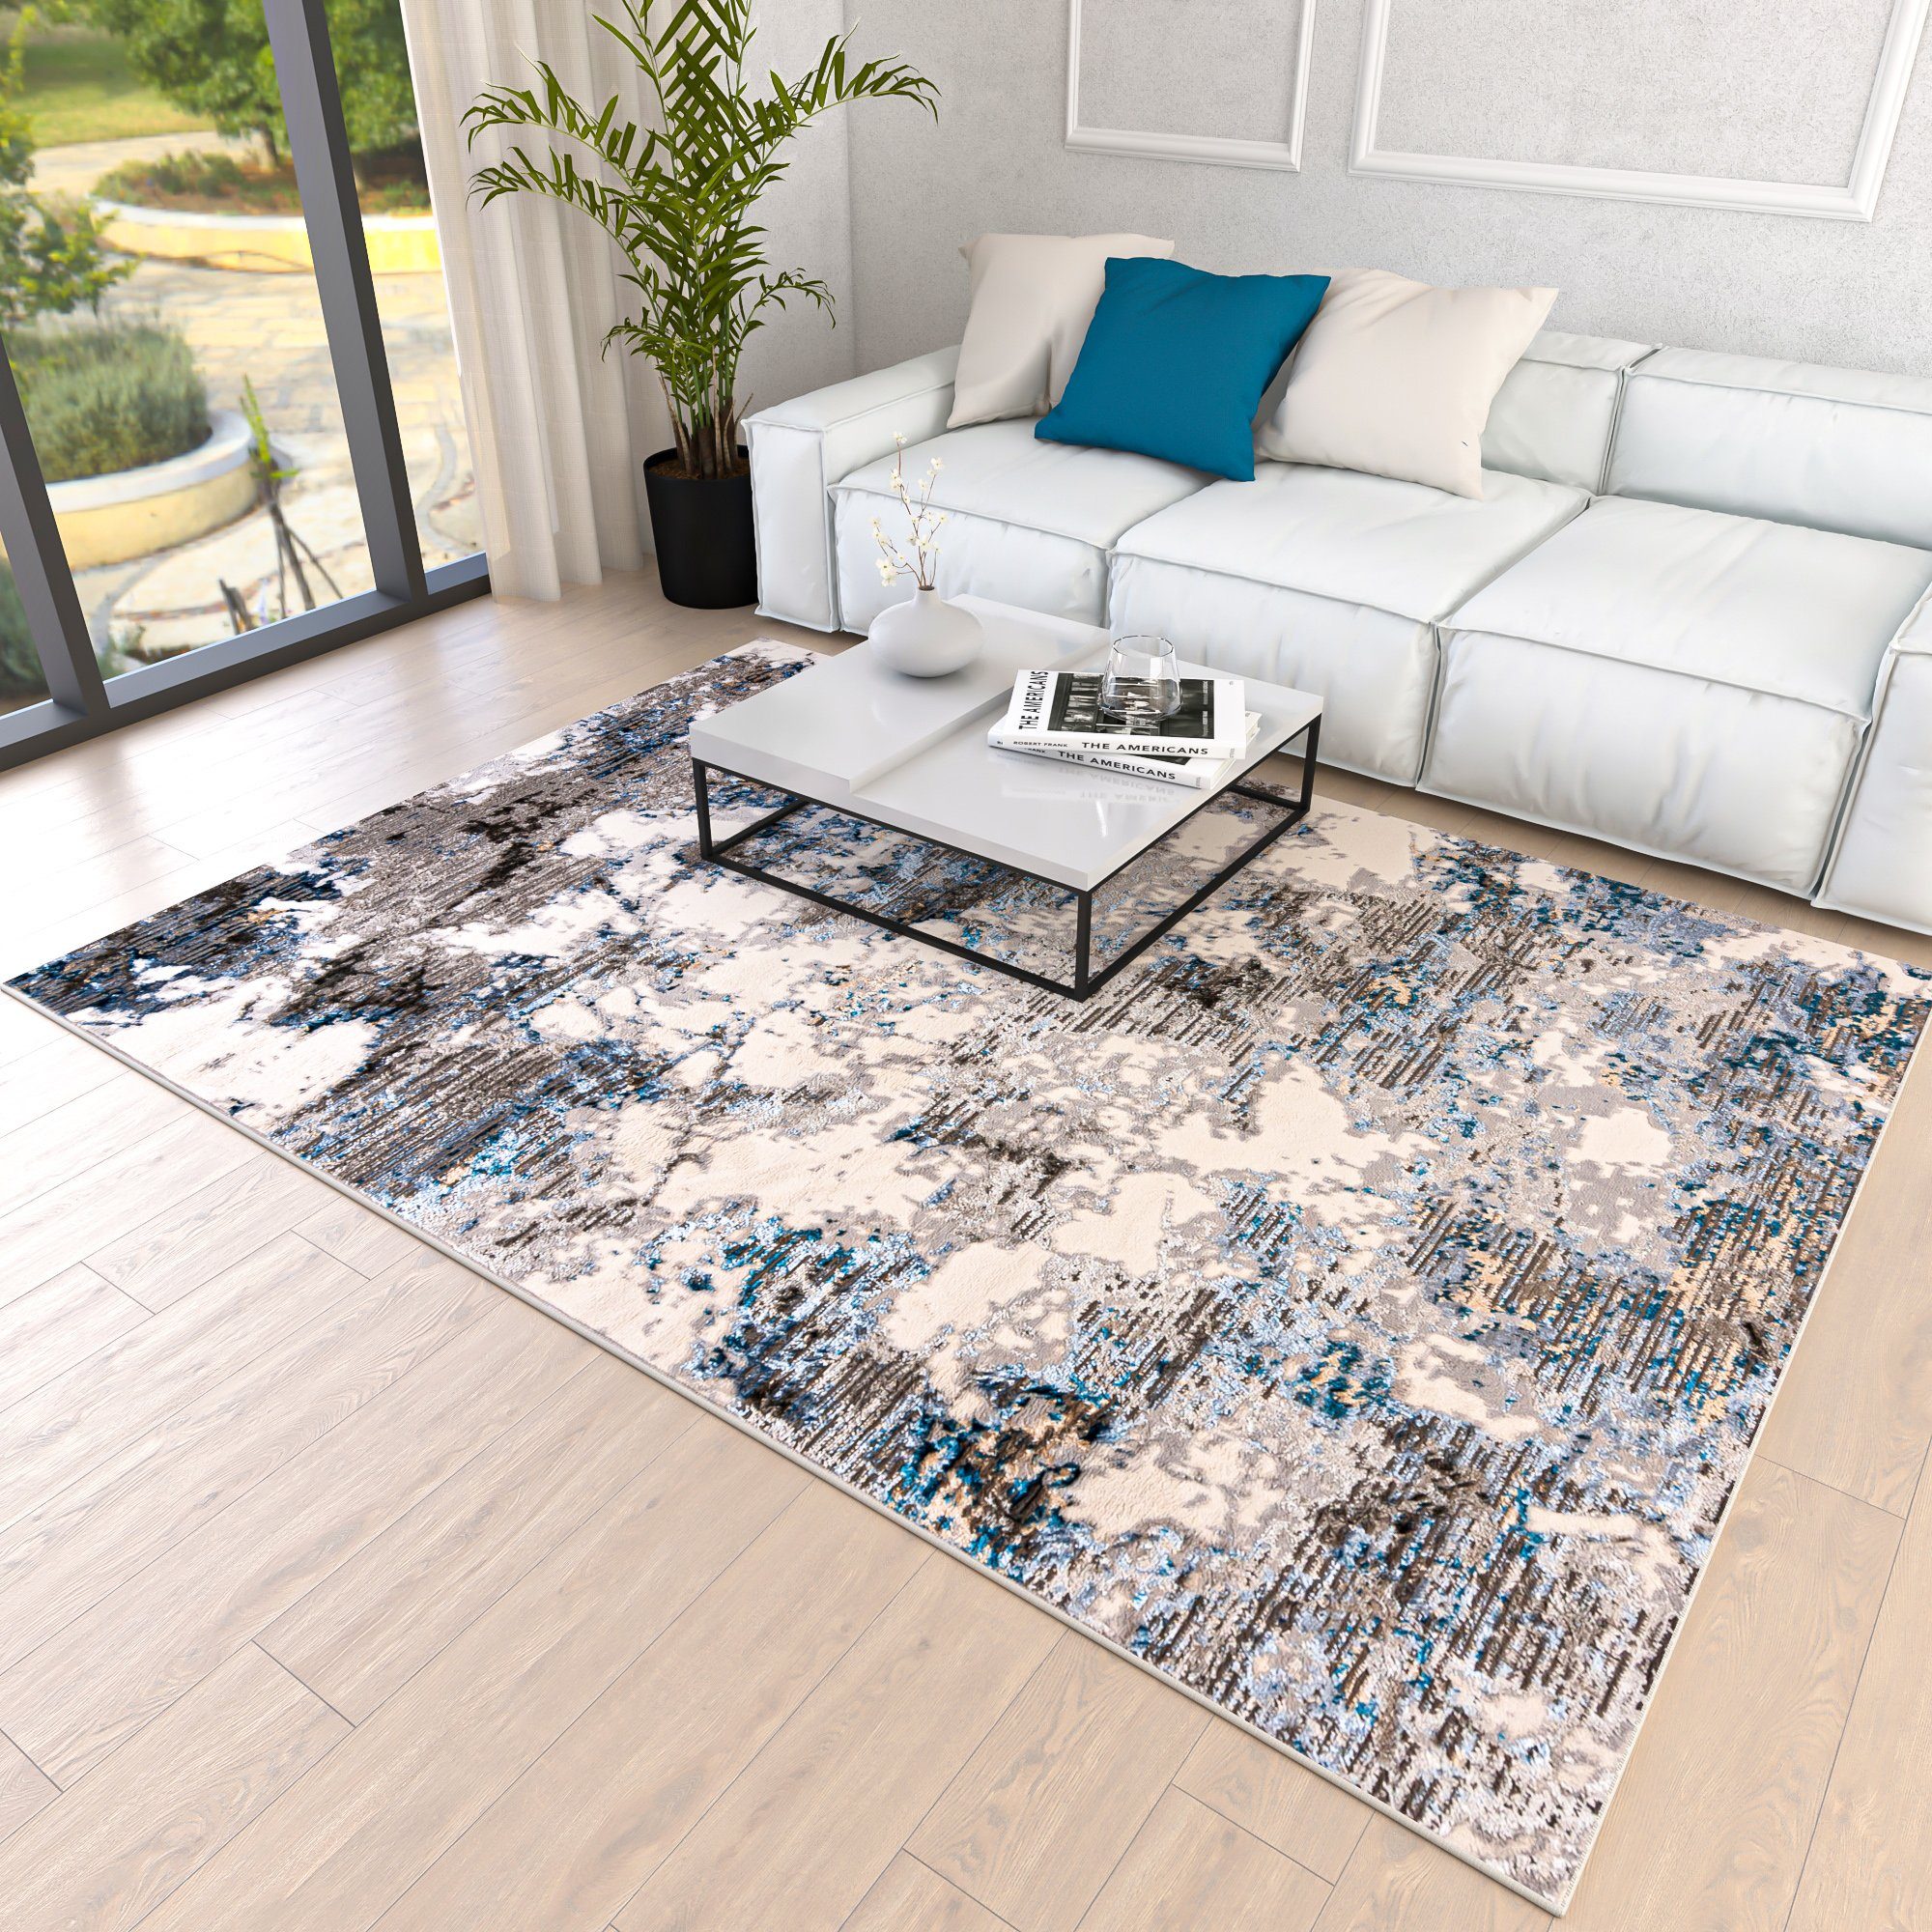 Designteppich Modern Teppich für Wohnzimmer - Abstrakt Muster, Beige Blau  Grau, Mazovia, 80 x 150 cm, Abstrakt, Modern, Höhe 8 mm, Kurzflor -  niedrige Florhöhe, LEICHTE PFLEGE - hergestellt aus 100 % Polyester